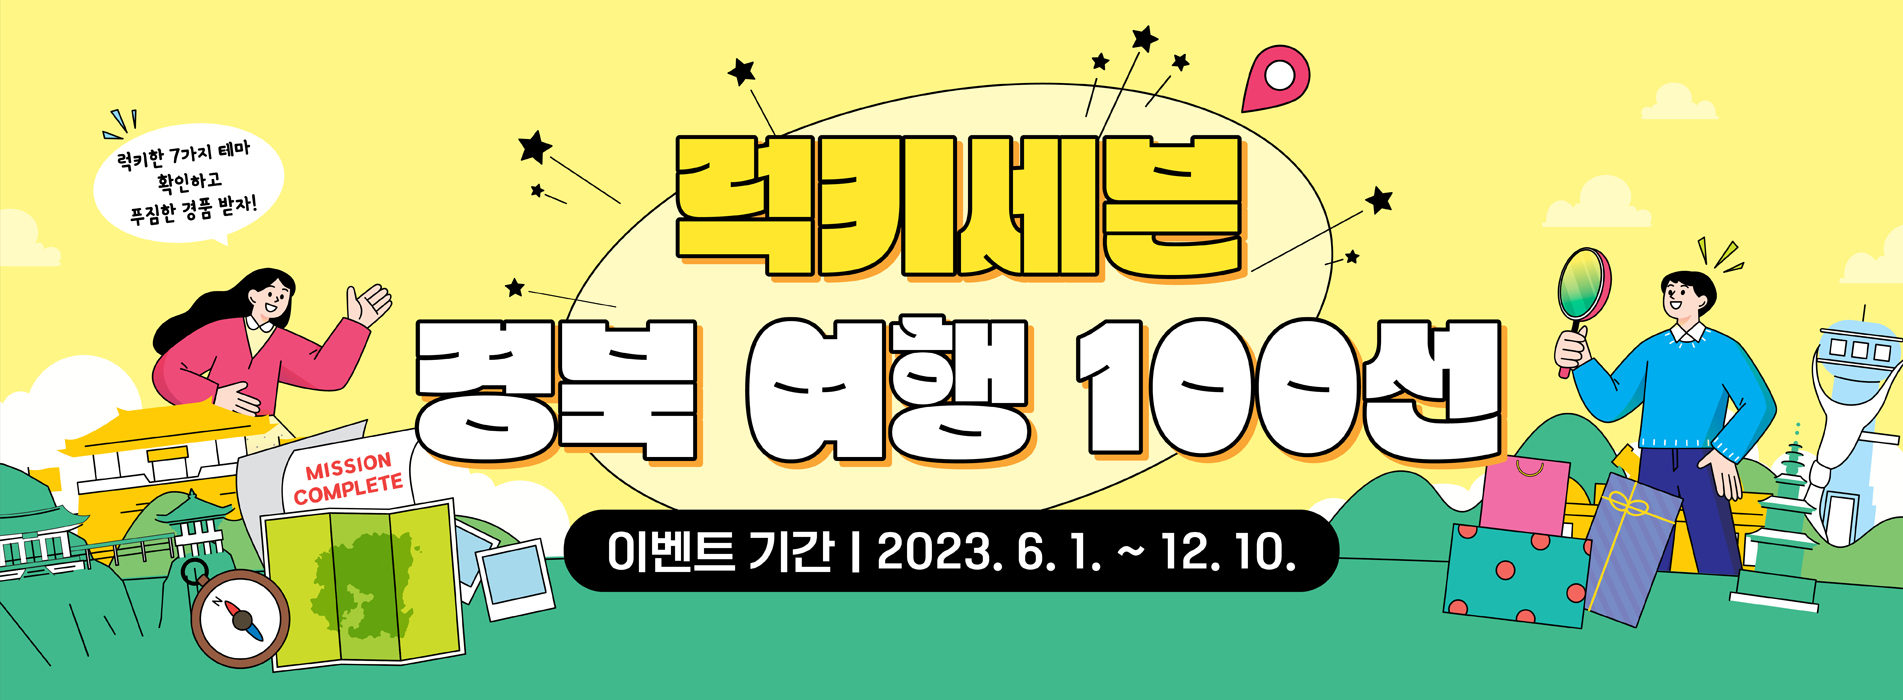 럭키세븐 경북 여행 100선 이벤트기간 | 2023. 6. 1. ~ 12. 10.